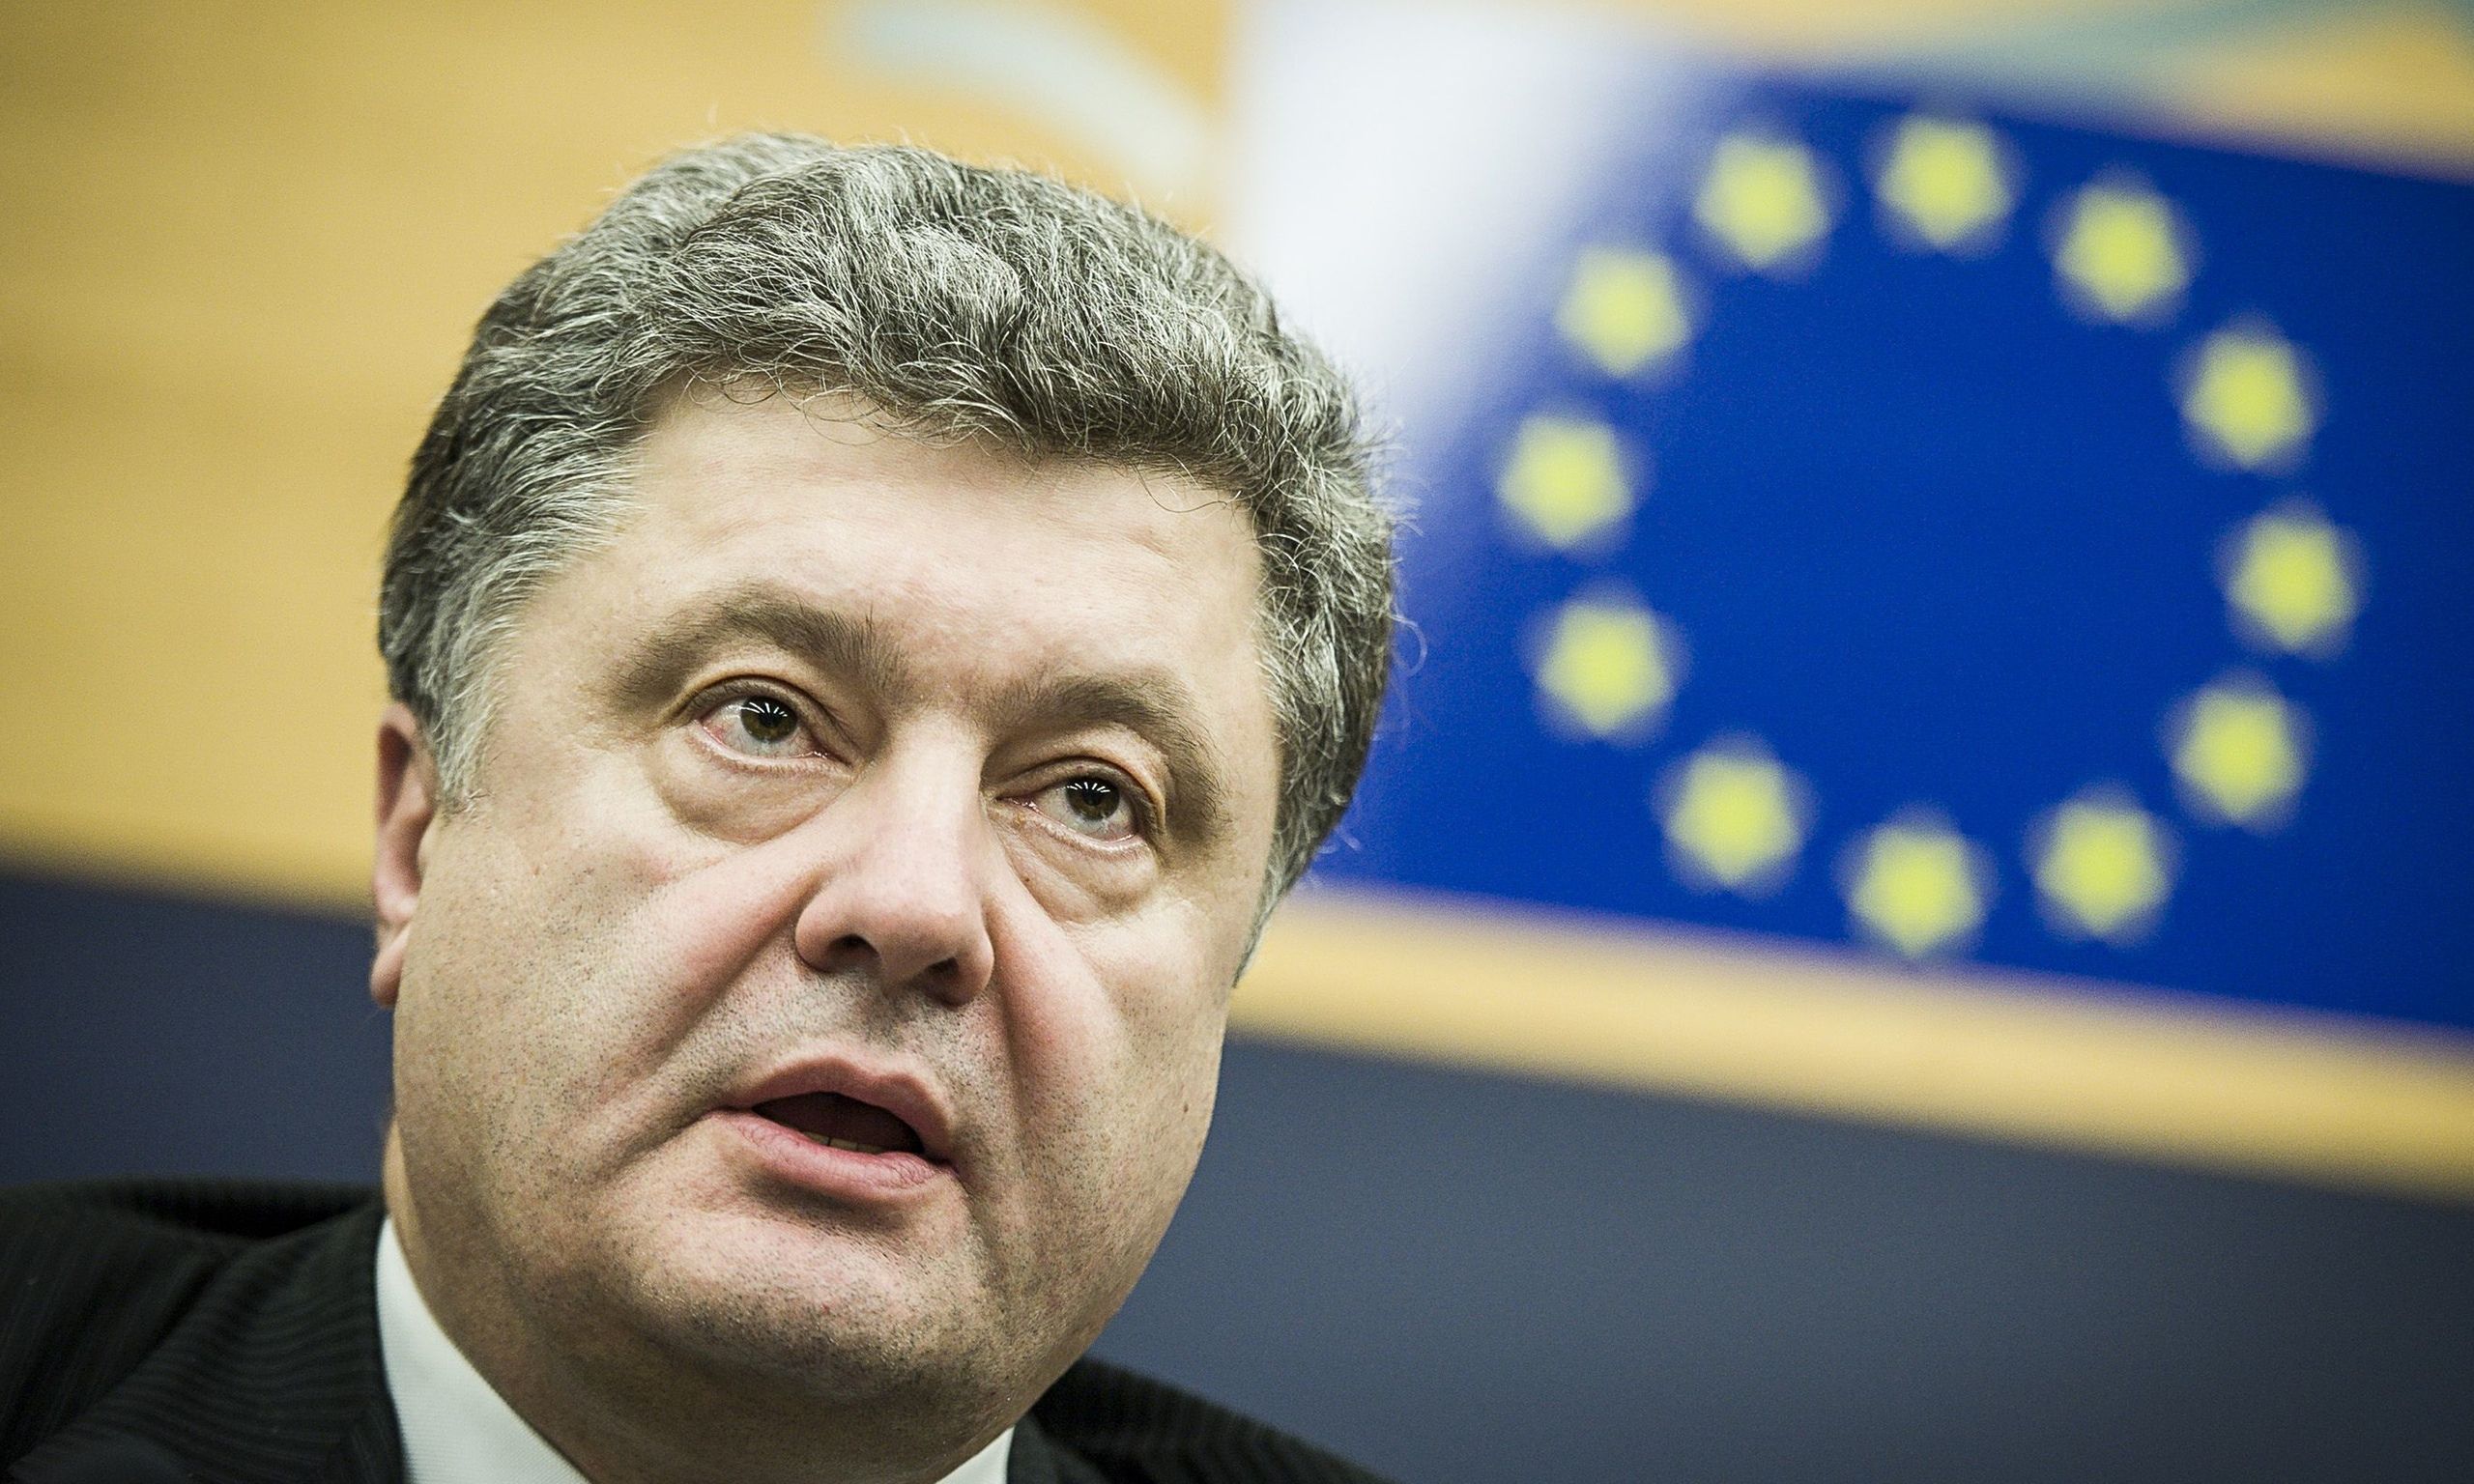 Poroshenko Elected Ukraine President, Putin Dodges Promise To ‘Respect’ Results